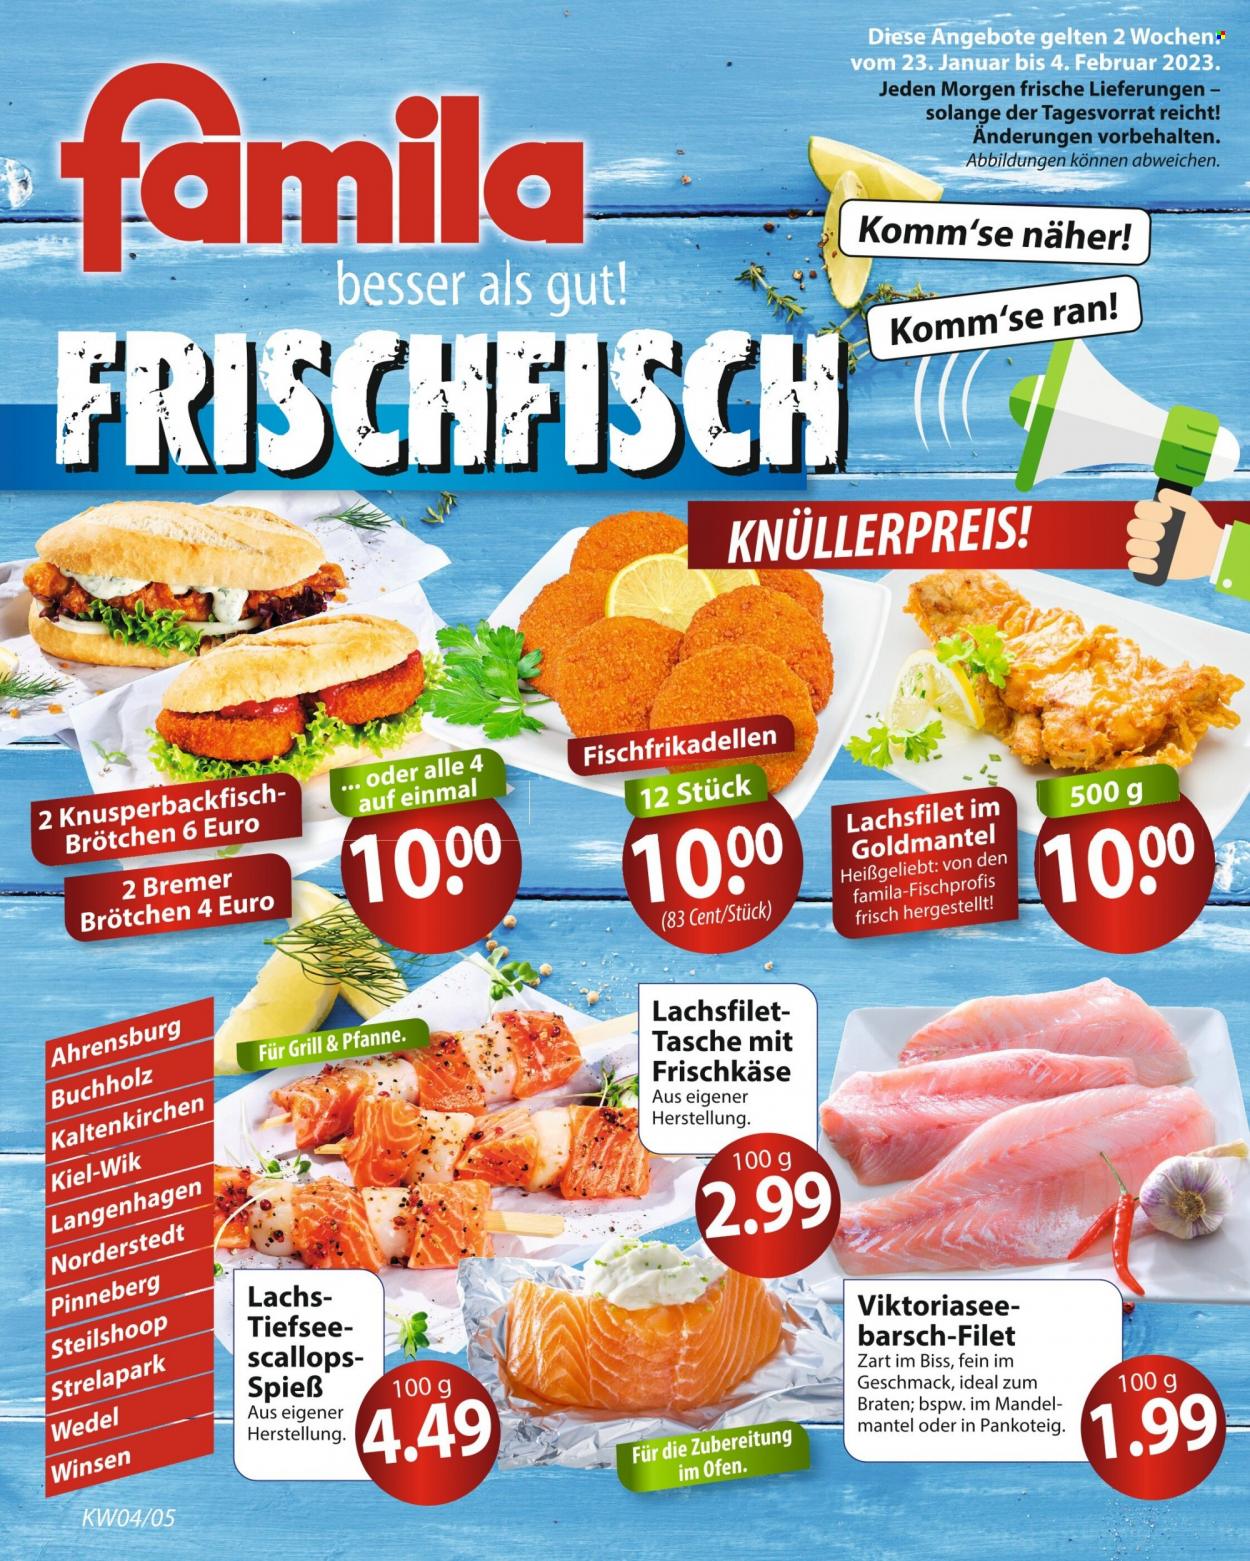 thumbnail - Prospekte famila - 23.01.2023 - 4.02.2023 - Produkte in Aktion - Fleischspieße, Brötchen, Lachs, Lachsfilet, Fischfrikadellen, Käse, Mantel, Tasche. Seite 1.